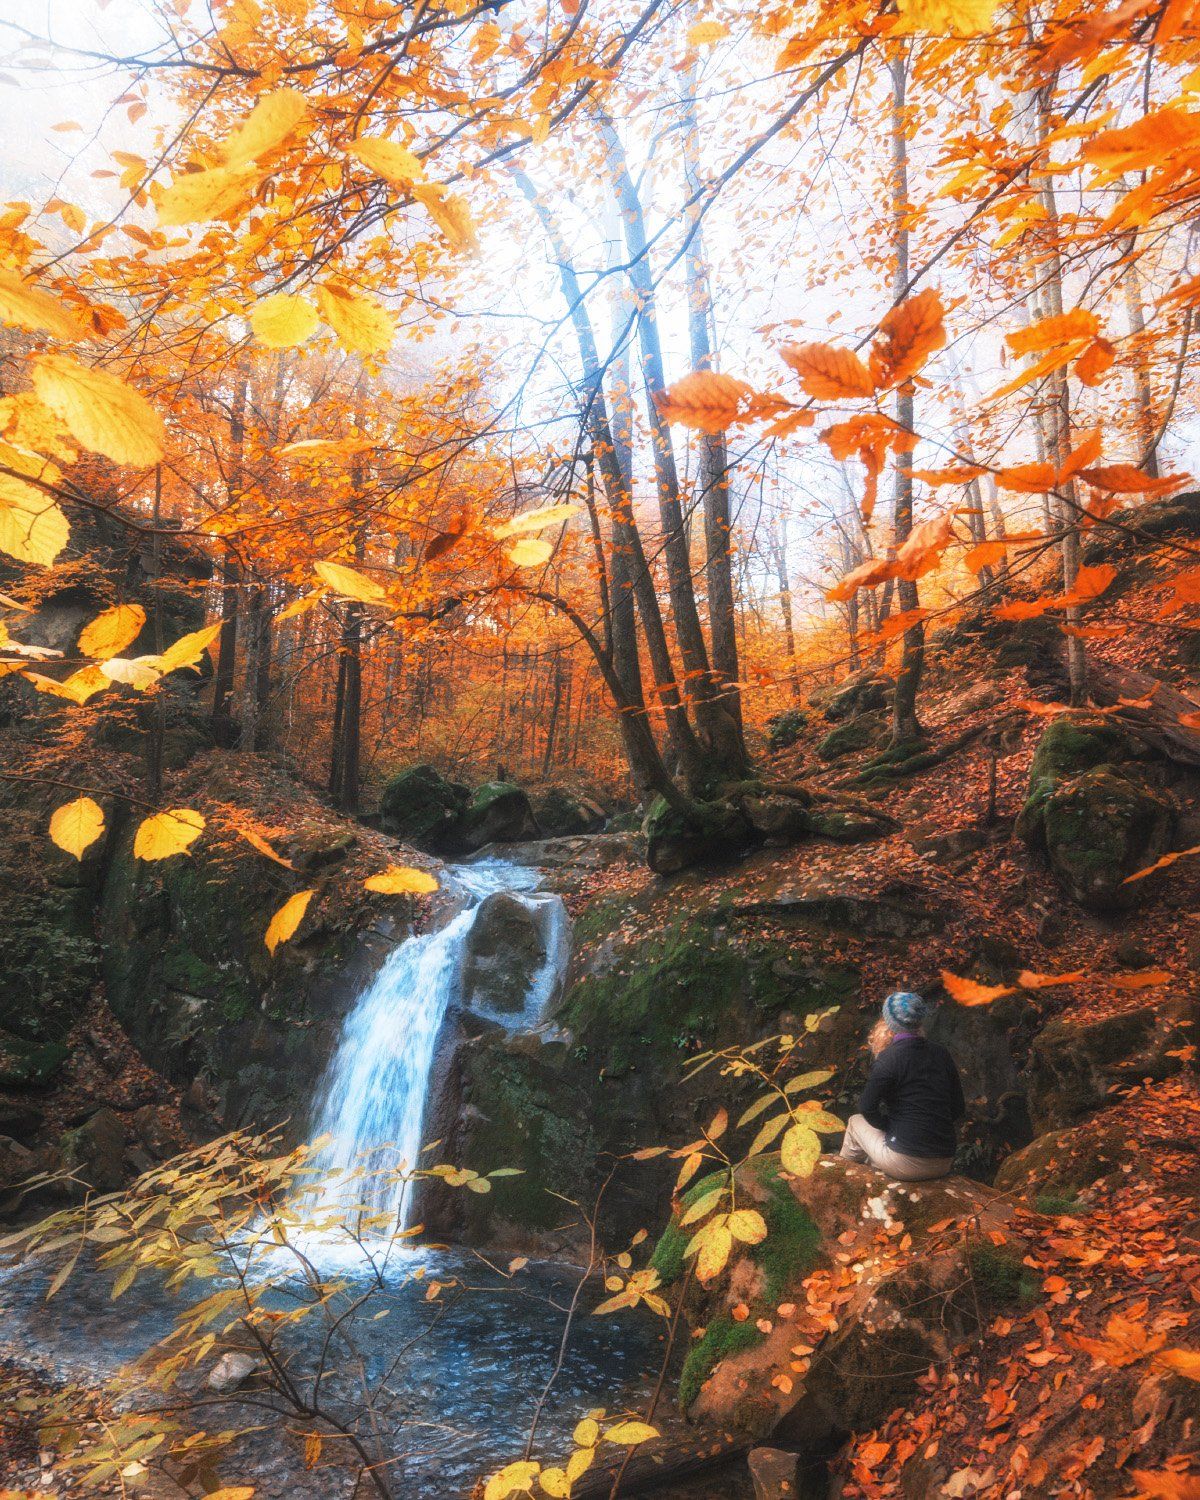  водопад, осень, краснодарский край, папай, поход, цвета, настроение, nikon, Сергей Лукашенко